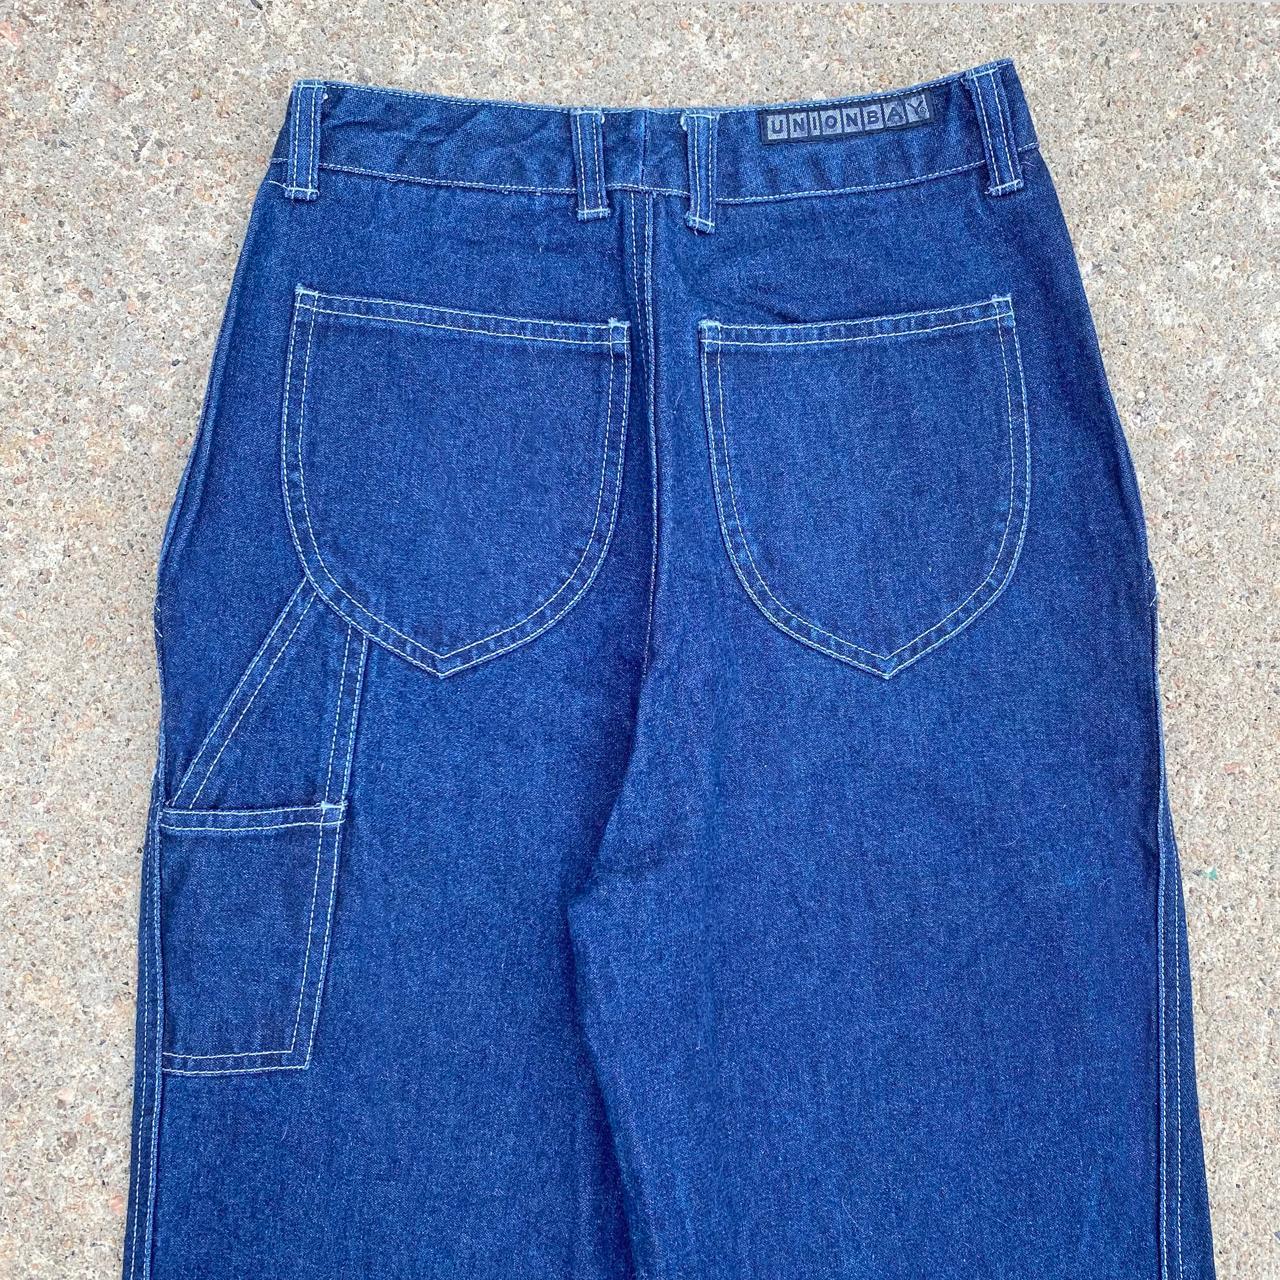 Union Bay Women's Blue Jeans (4)